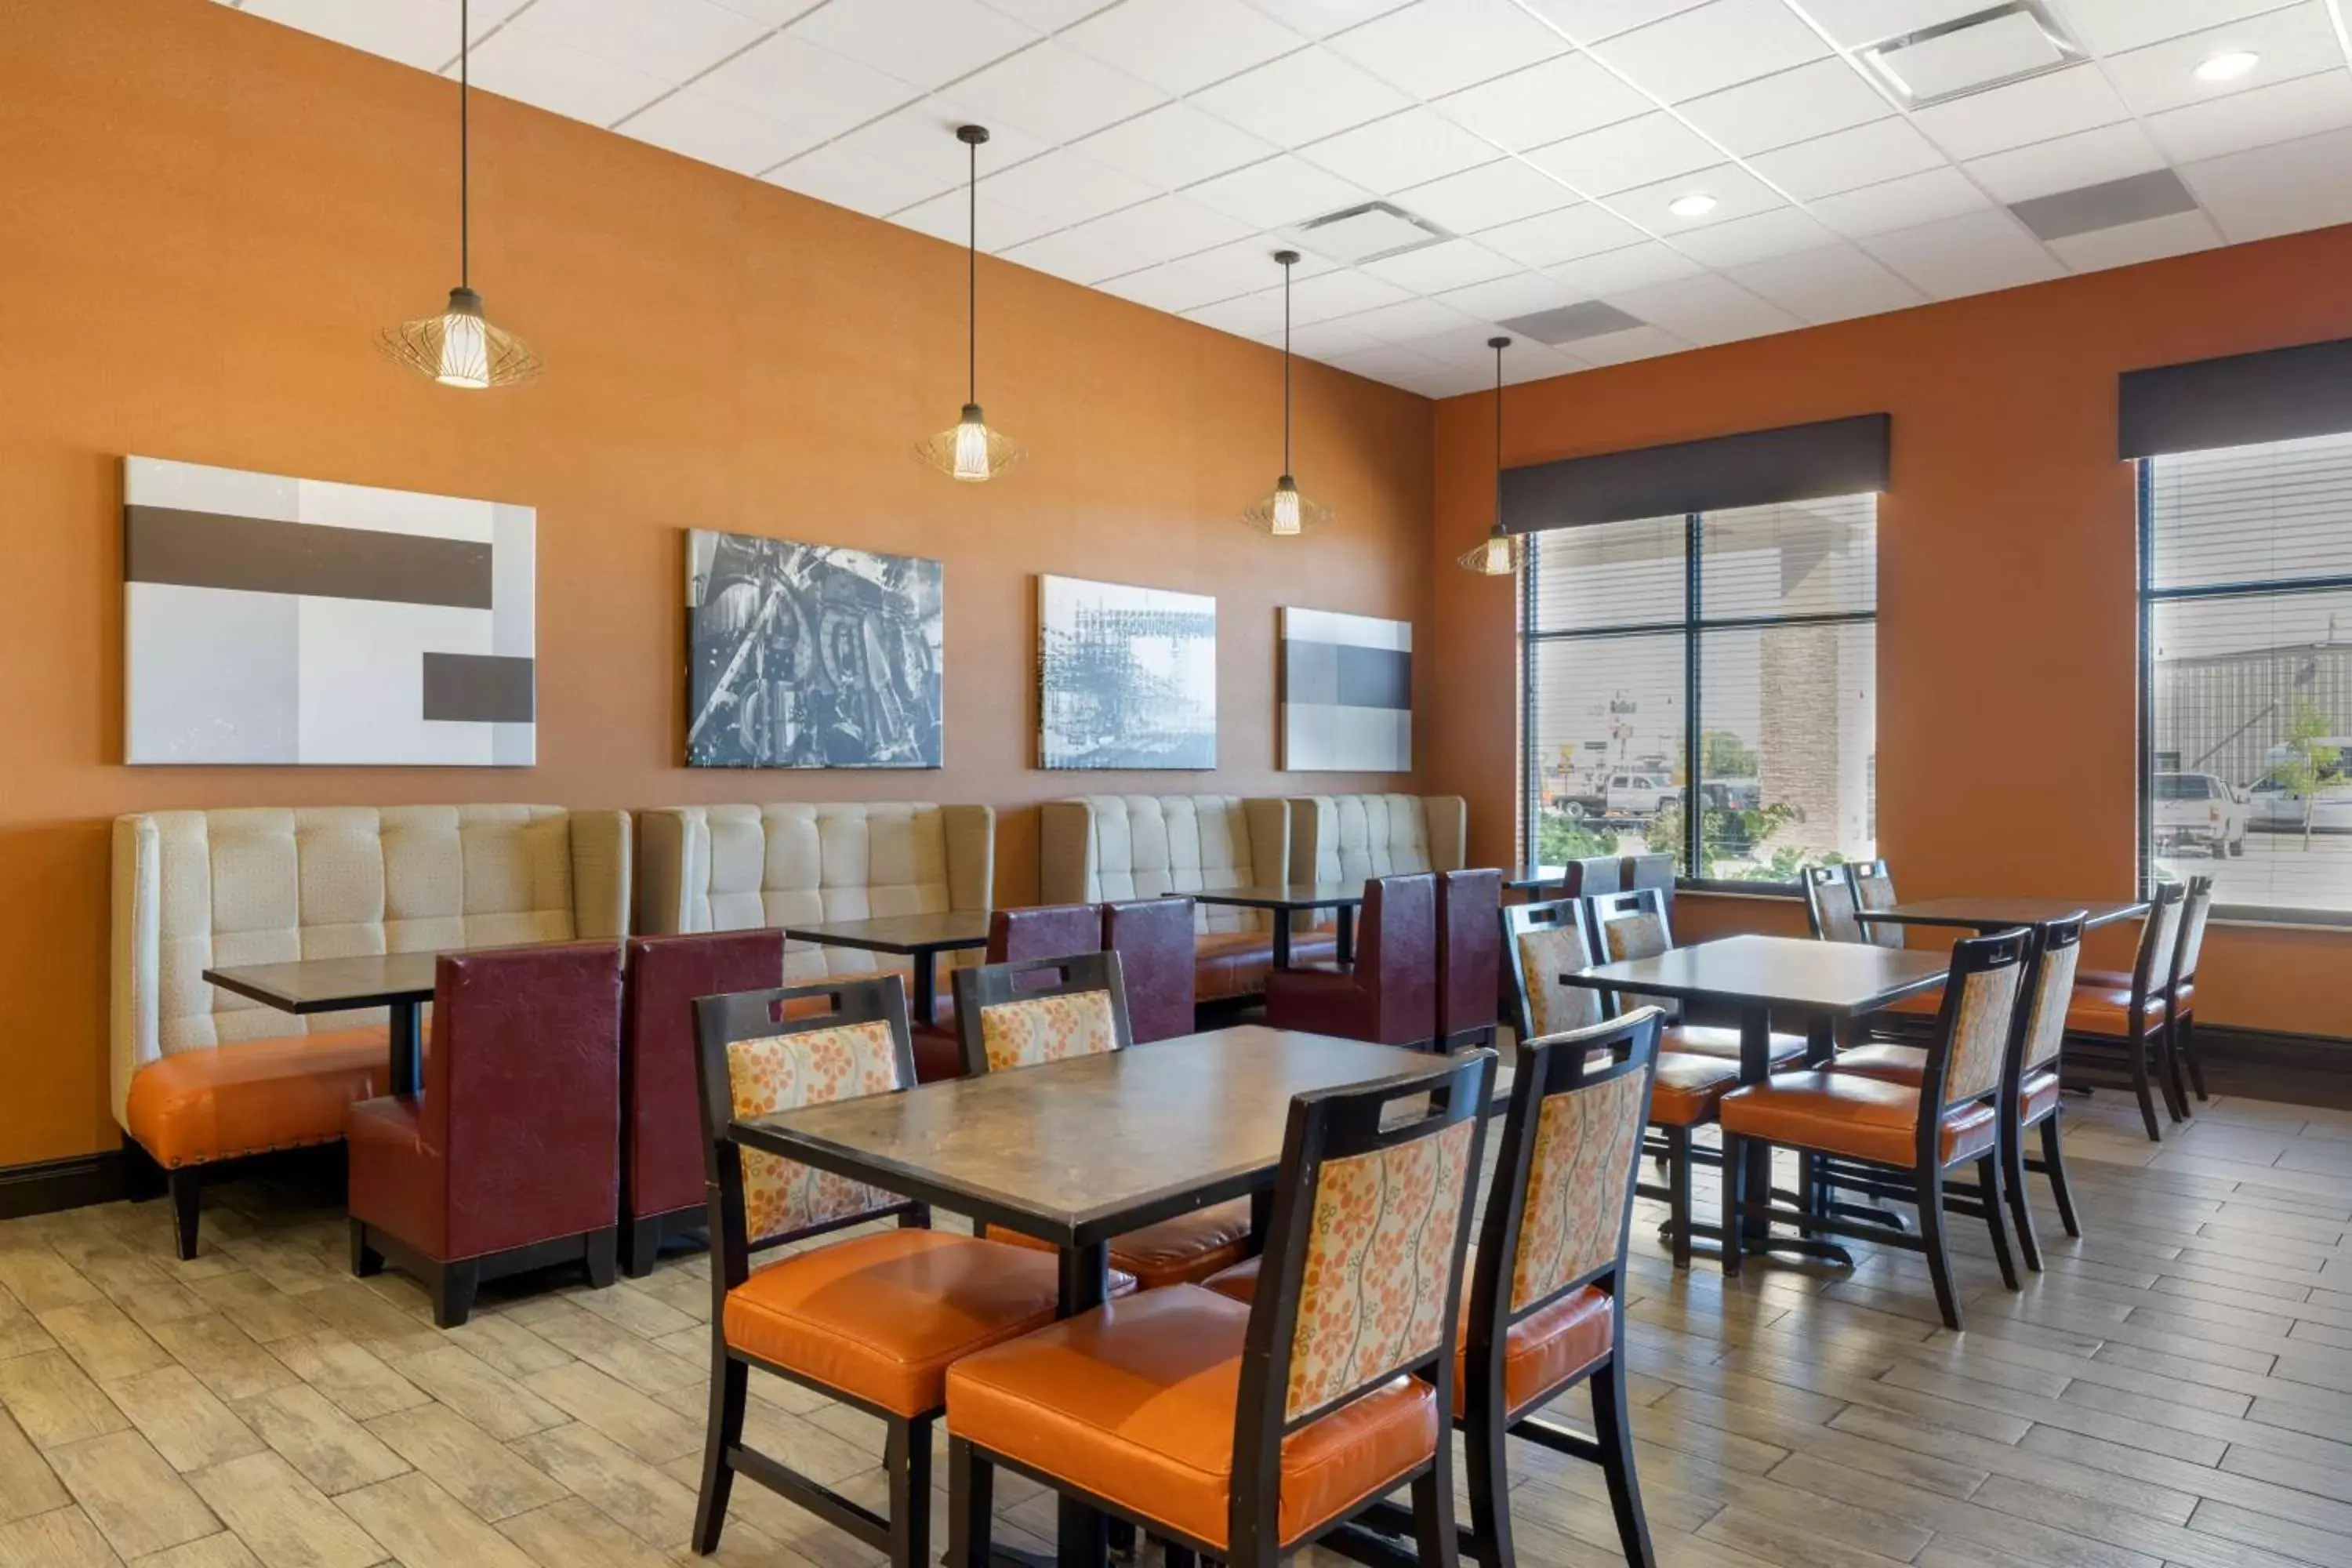 Breakfast, Restaurant/Places to Eat in Best Western Plus North Platte Inn & Suites